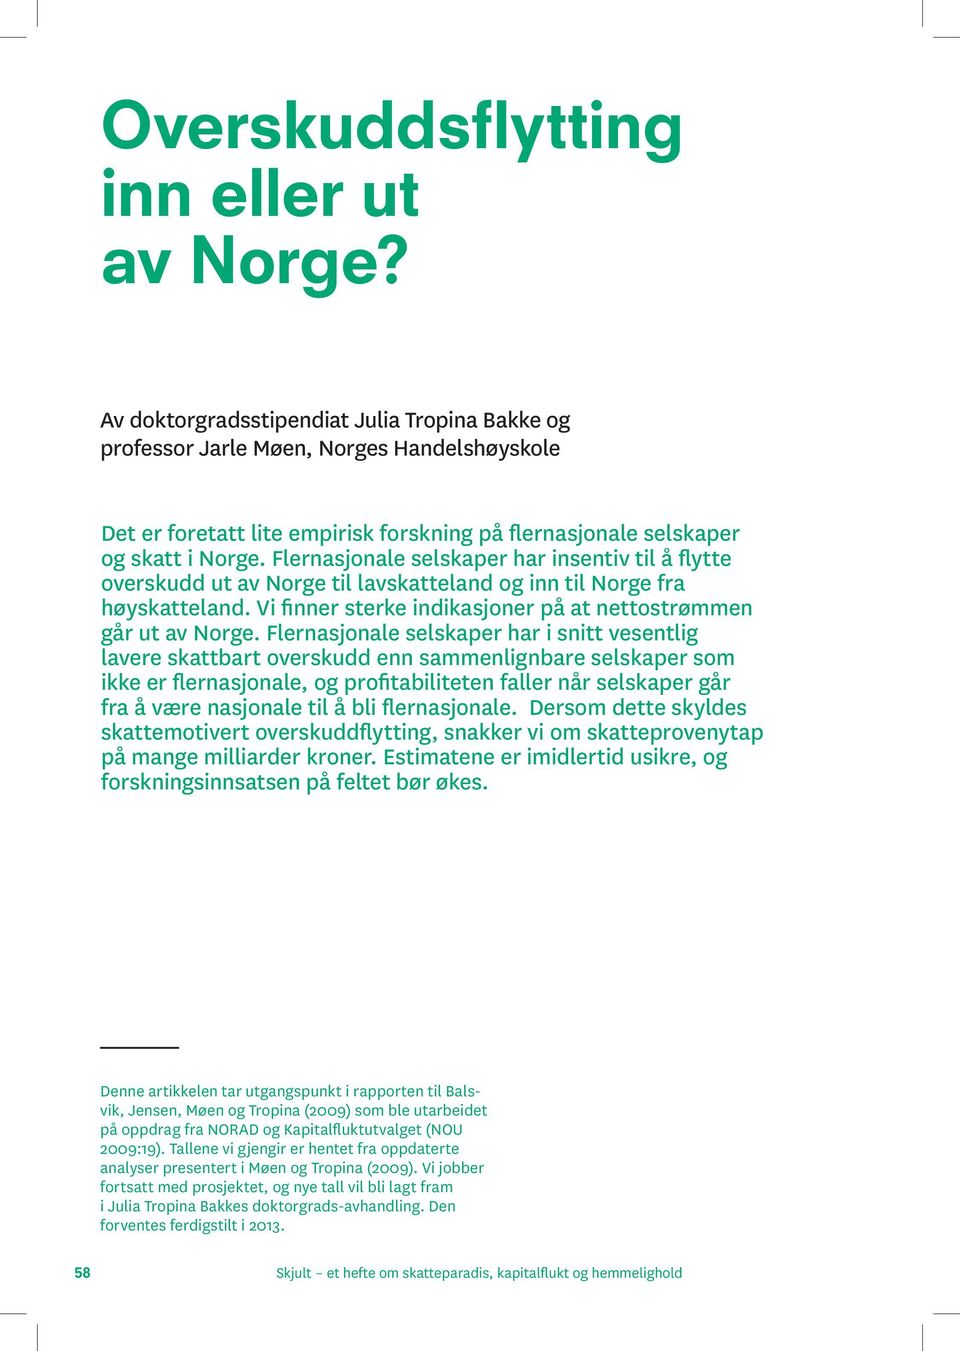 Flernasjonale selskaper har insentiv til å flytte overskudd ut av Norge til lavskatteland og inn til Norge fra høyskatteland. Vi finner sterke indikasjoner på at nettostrømmen går ut av Norge.